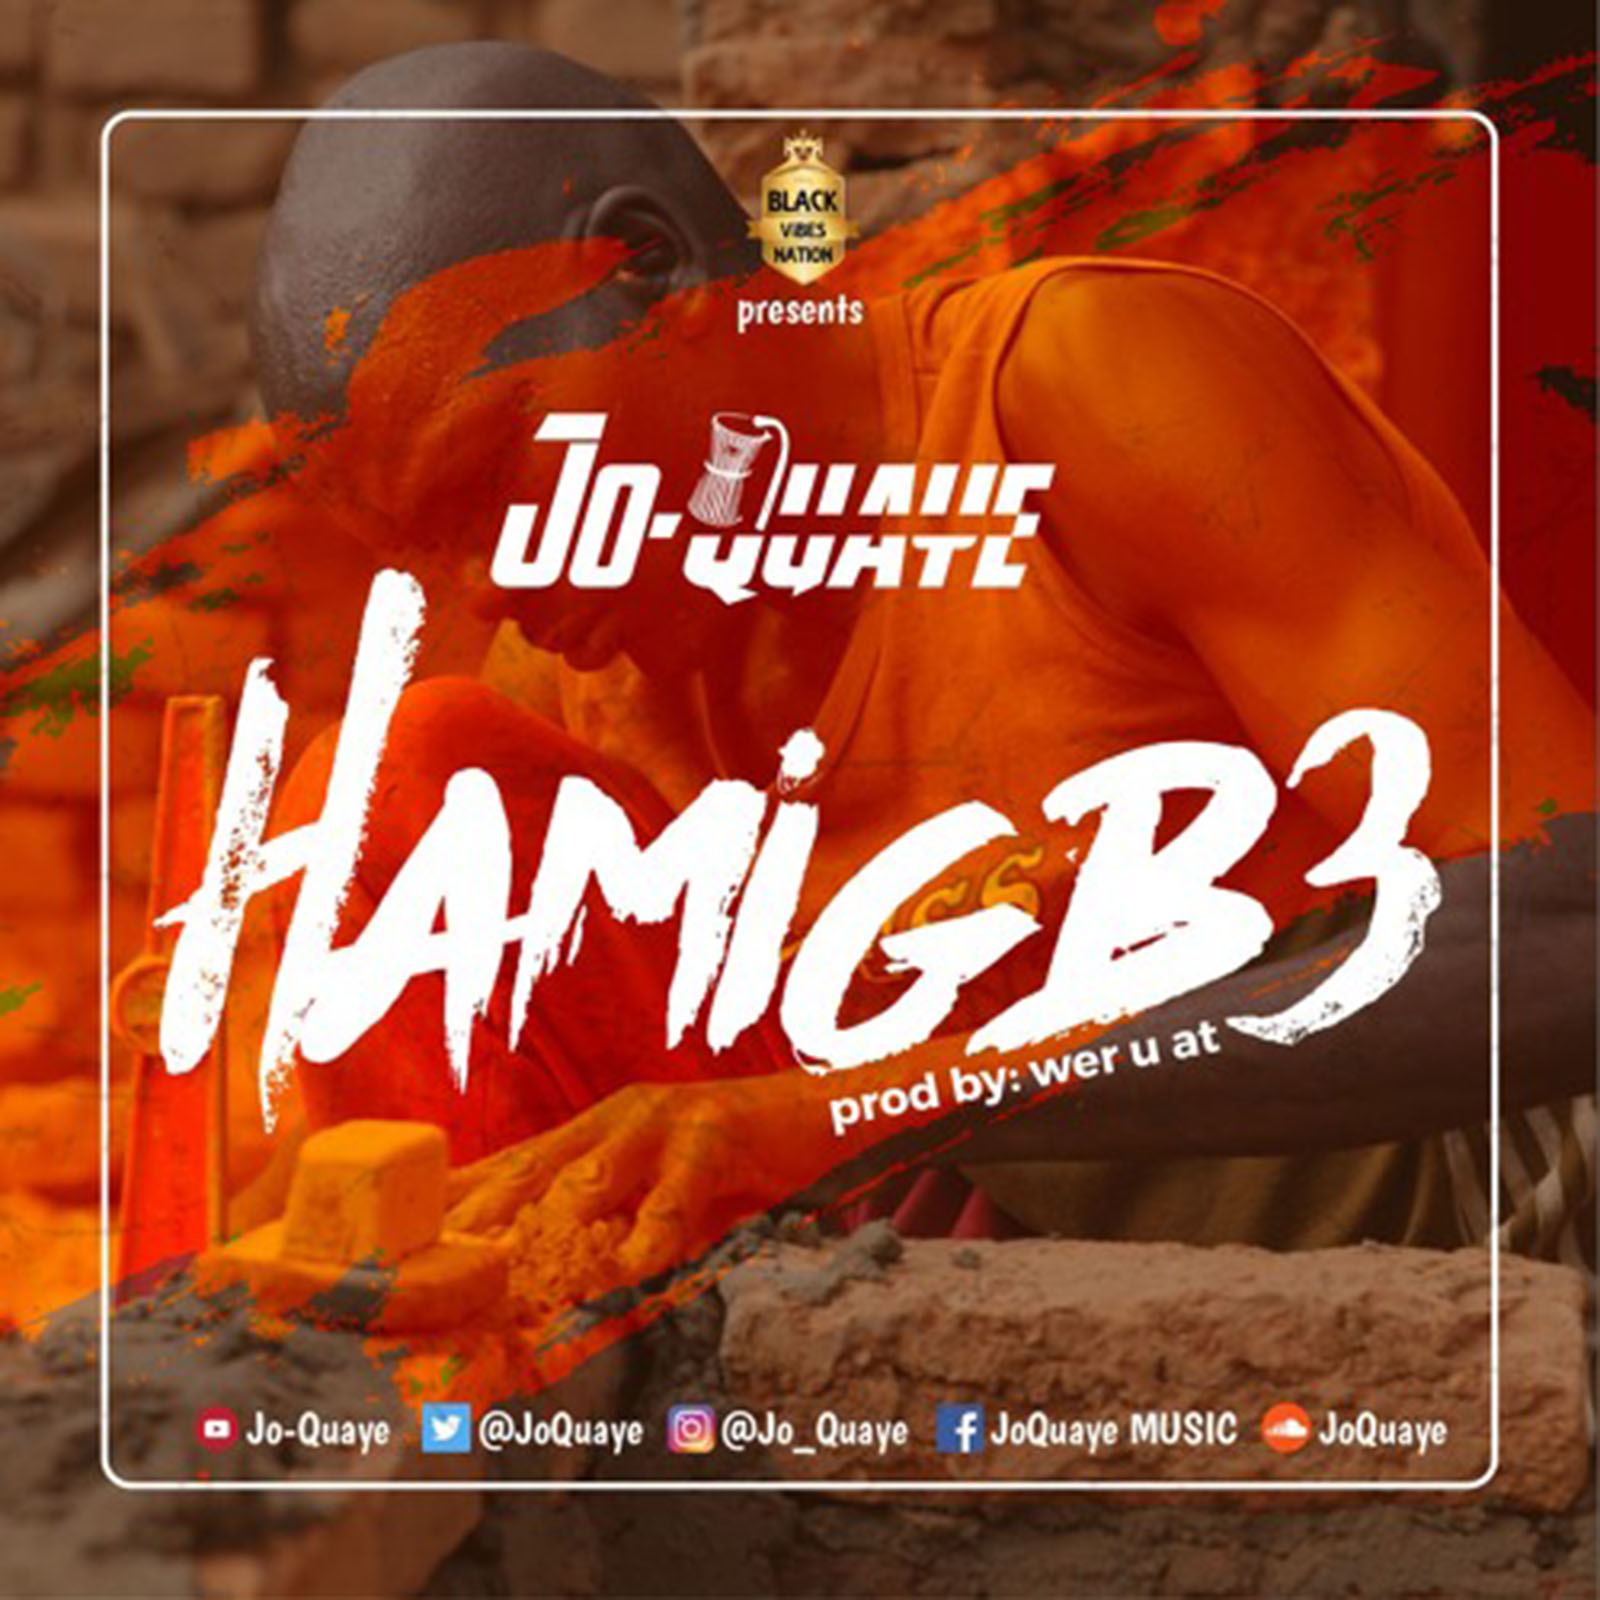 Hamigb3 by Jo-Quaye